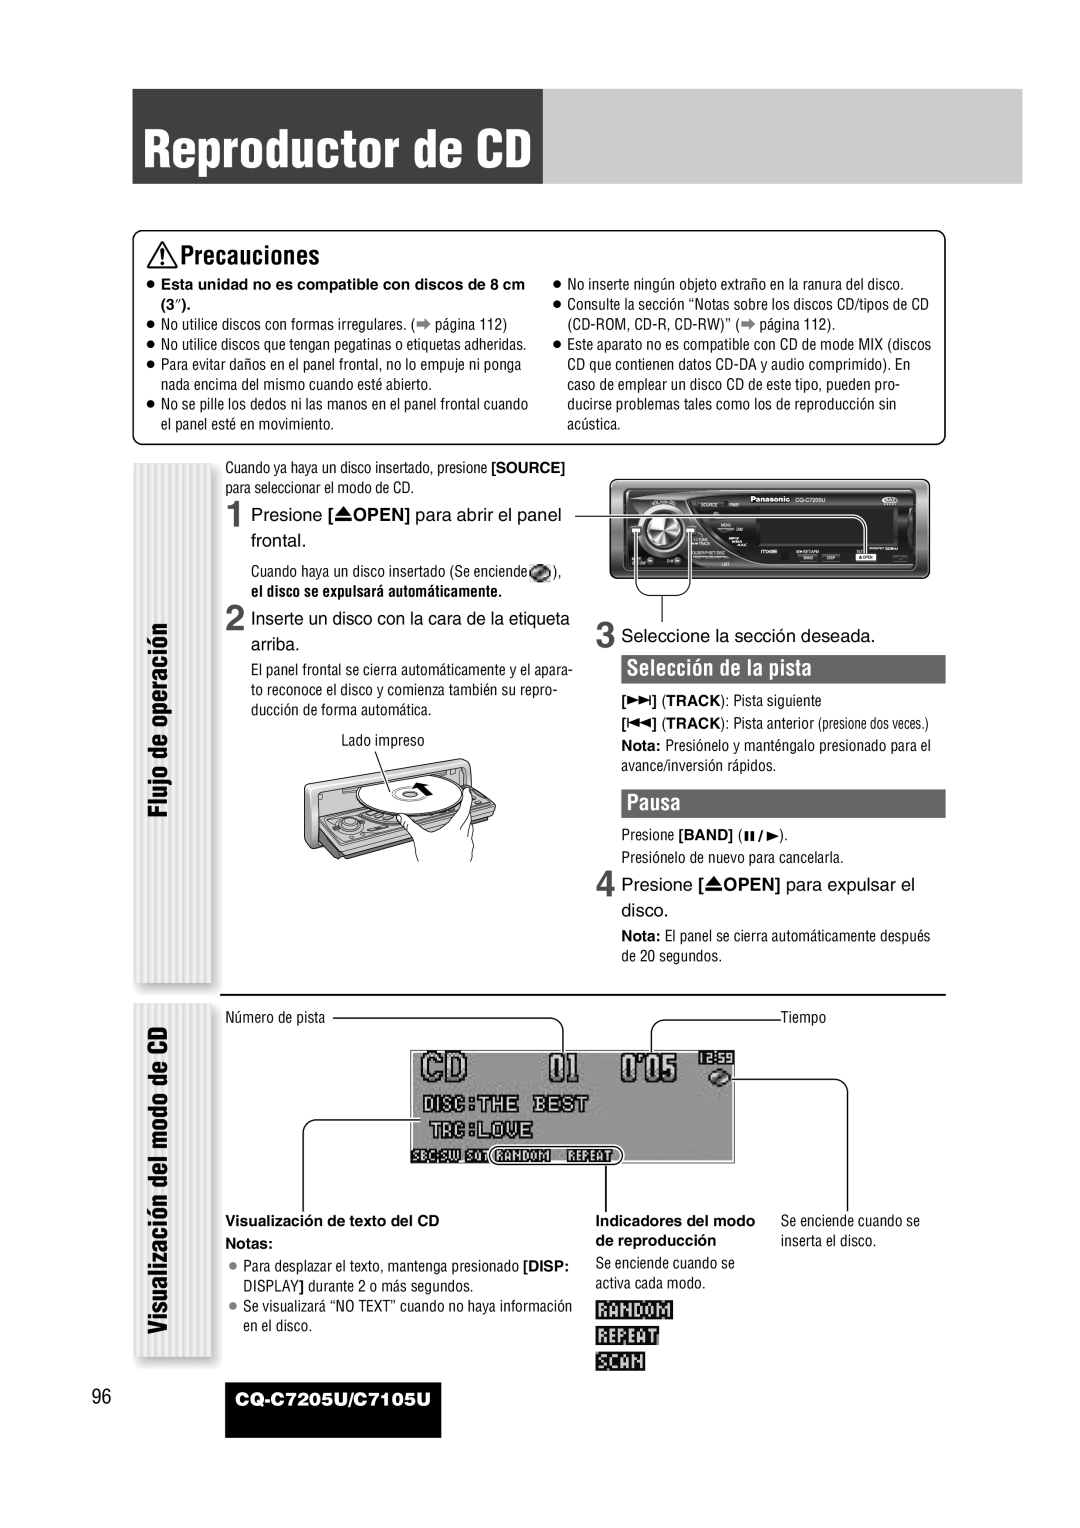 Panasonic CQ-C7205U warranty Reproductor de CD, Precauciones, Flujo de operación Visualización del modo de CD, Pausa 